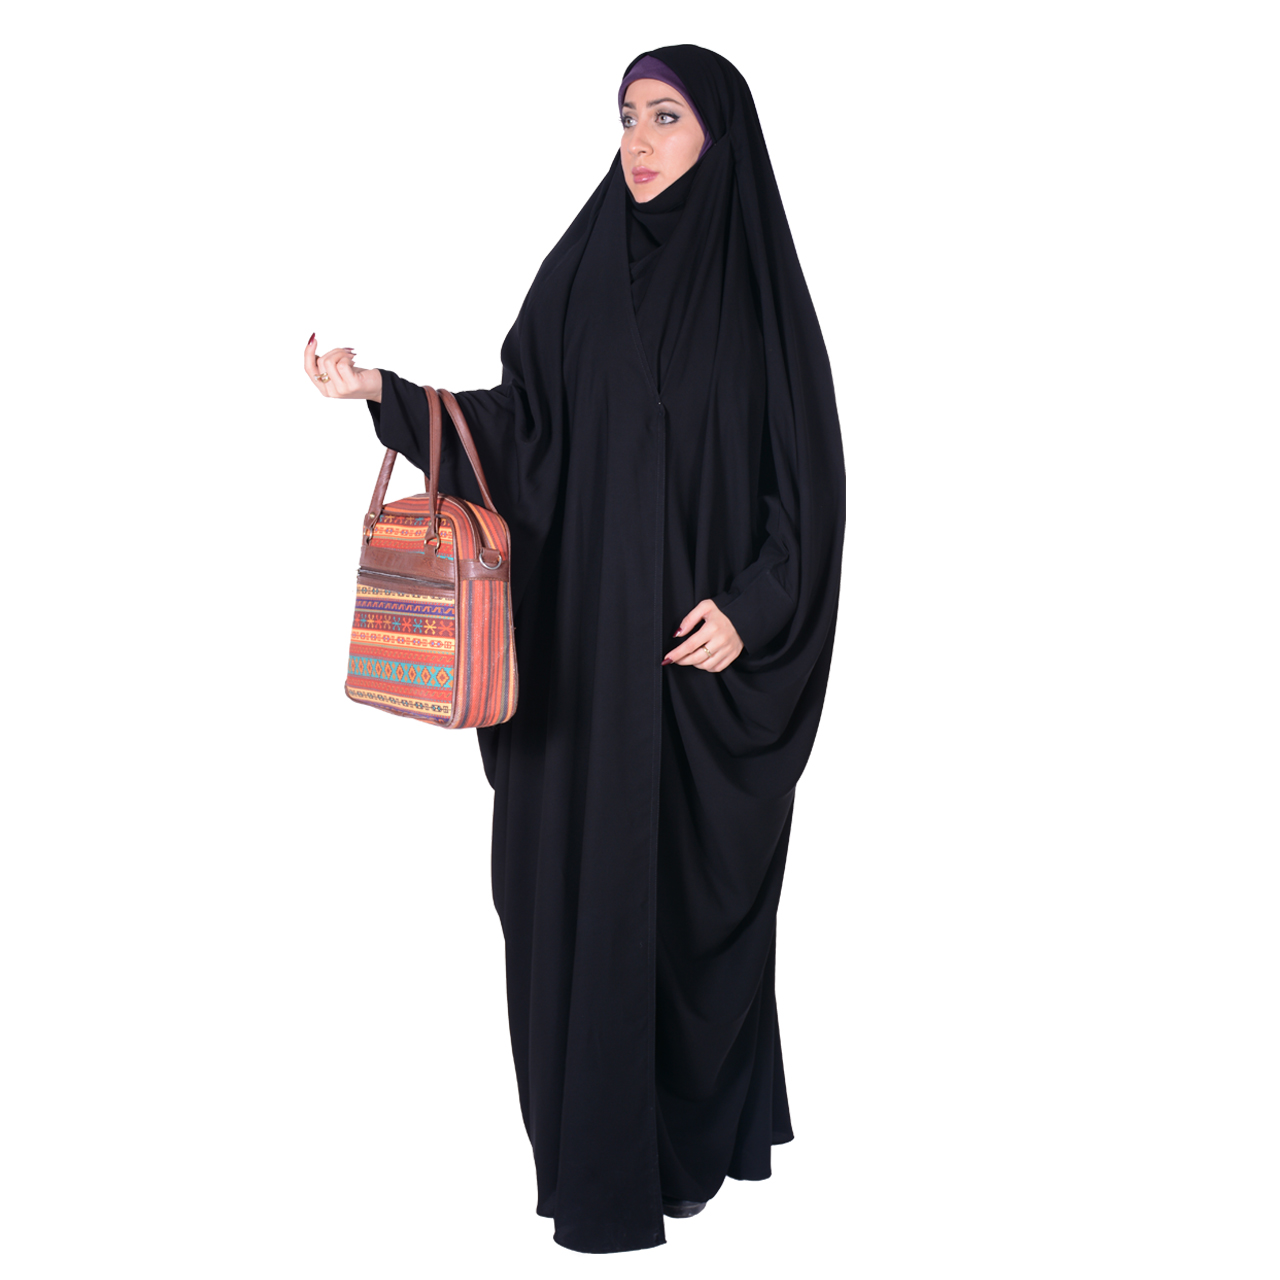 نکته خرید - قیمت روز چادر بحرینی شهر حجاب مدل کرپ کریستال کد 8040 خرید